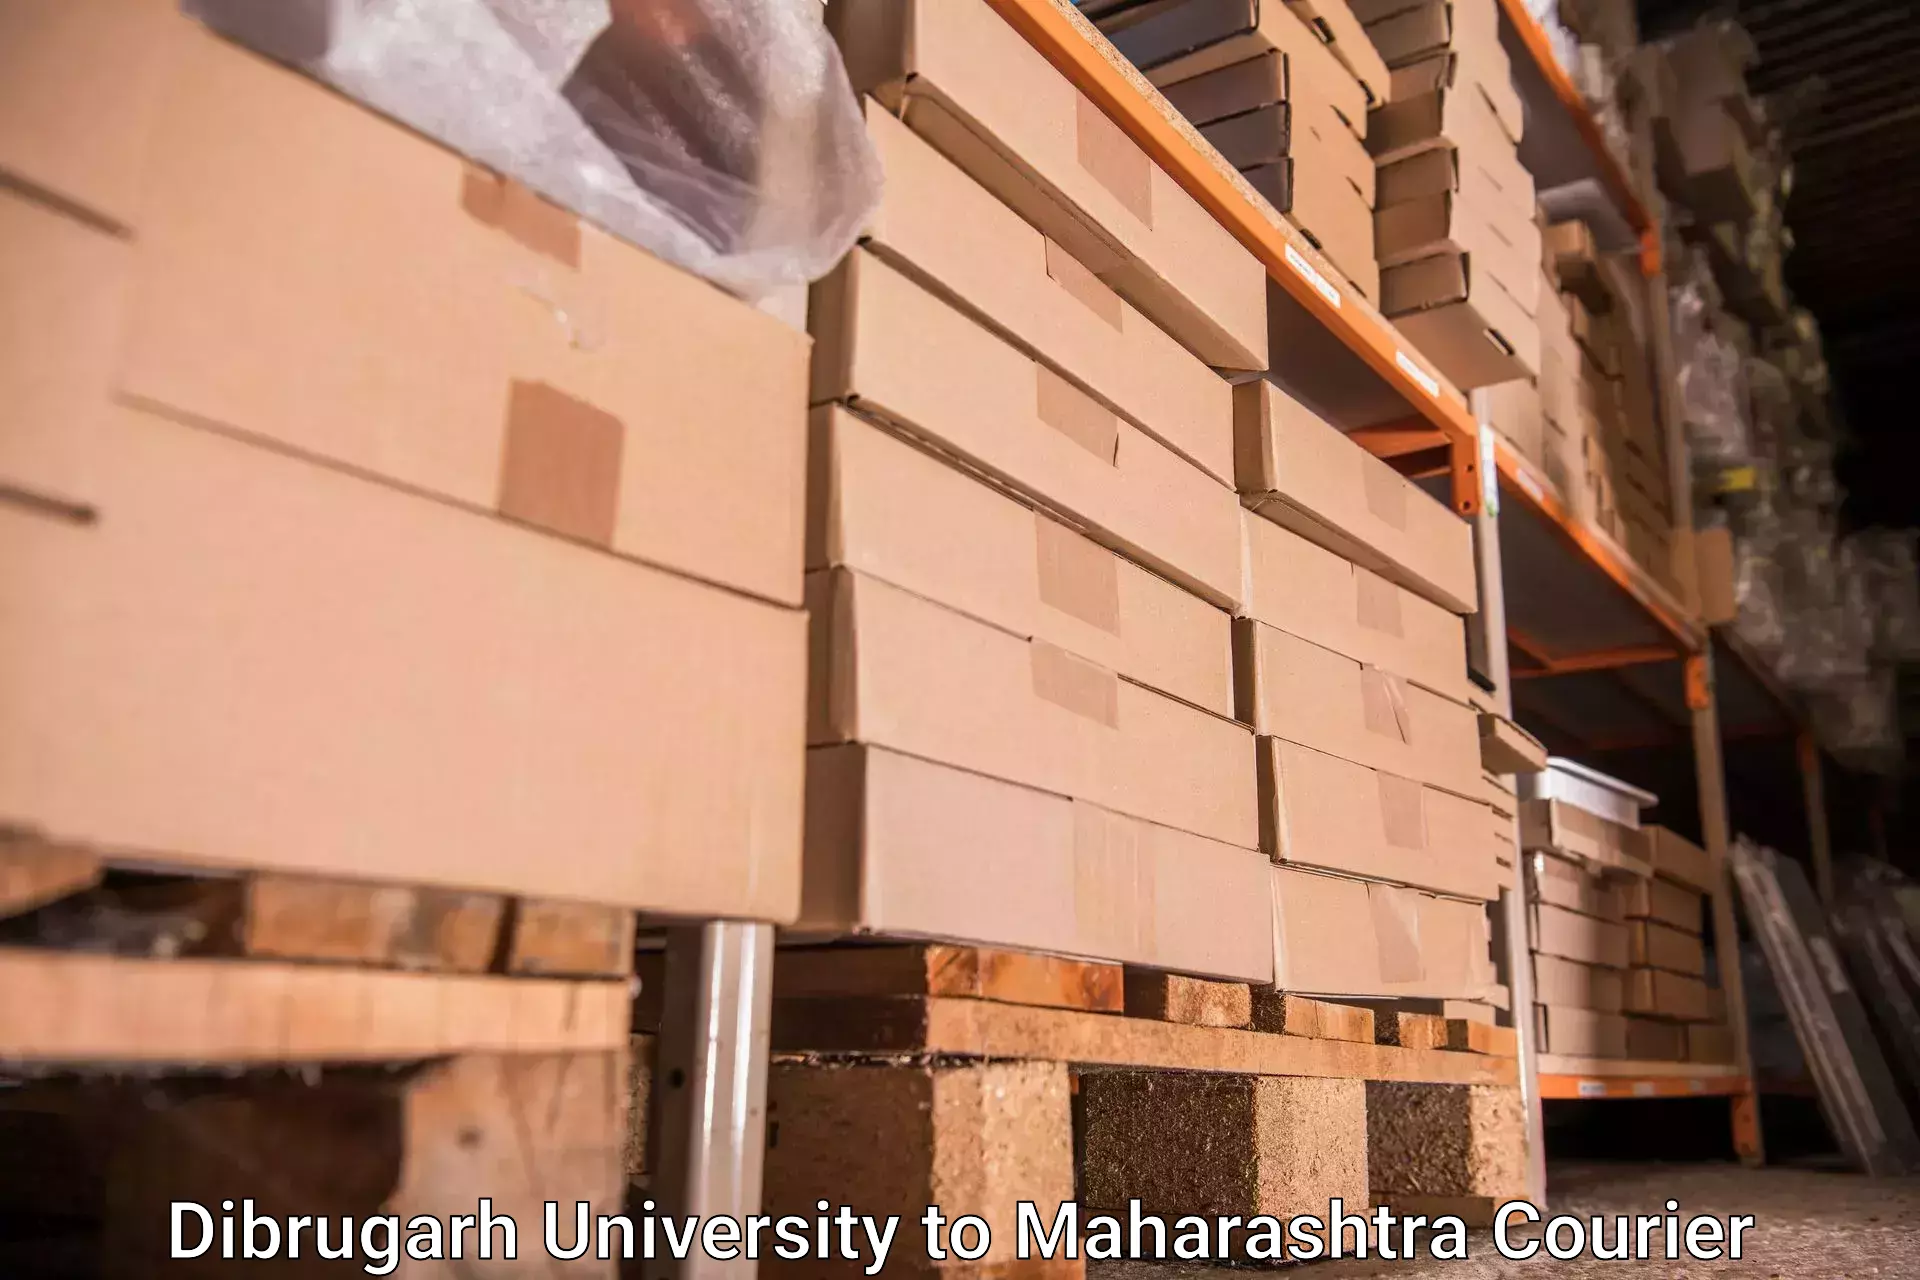 Baggage courier service Dibrugarh University to Borivali